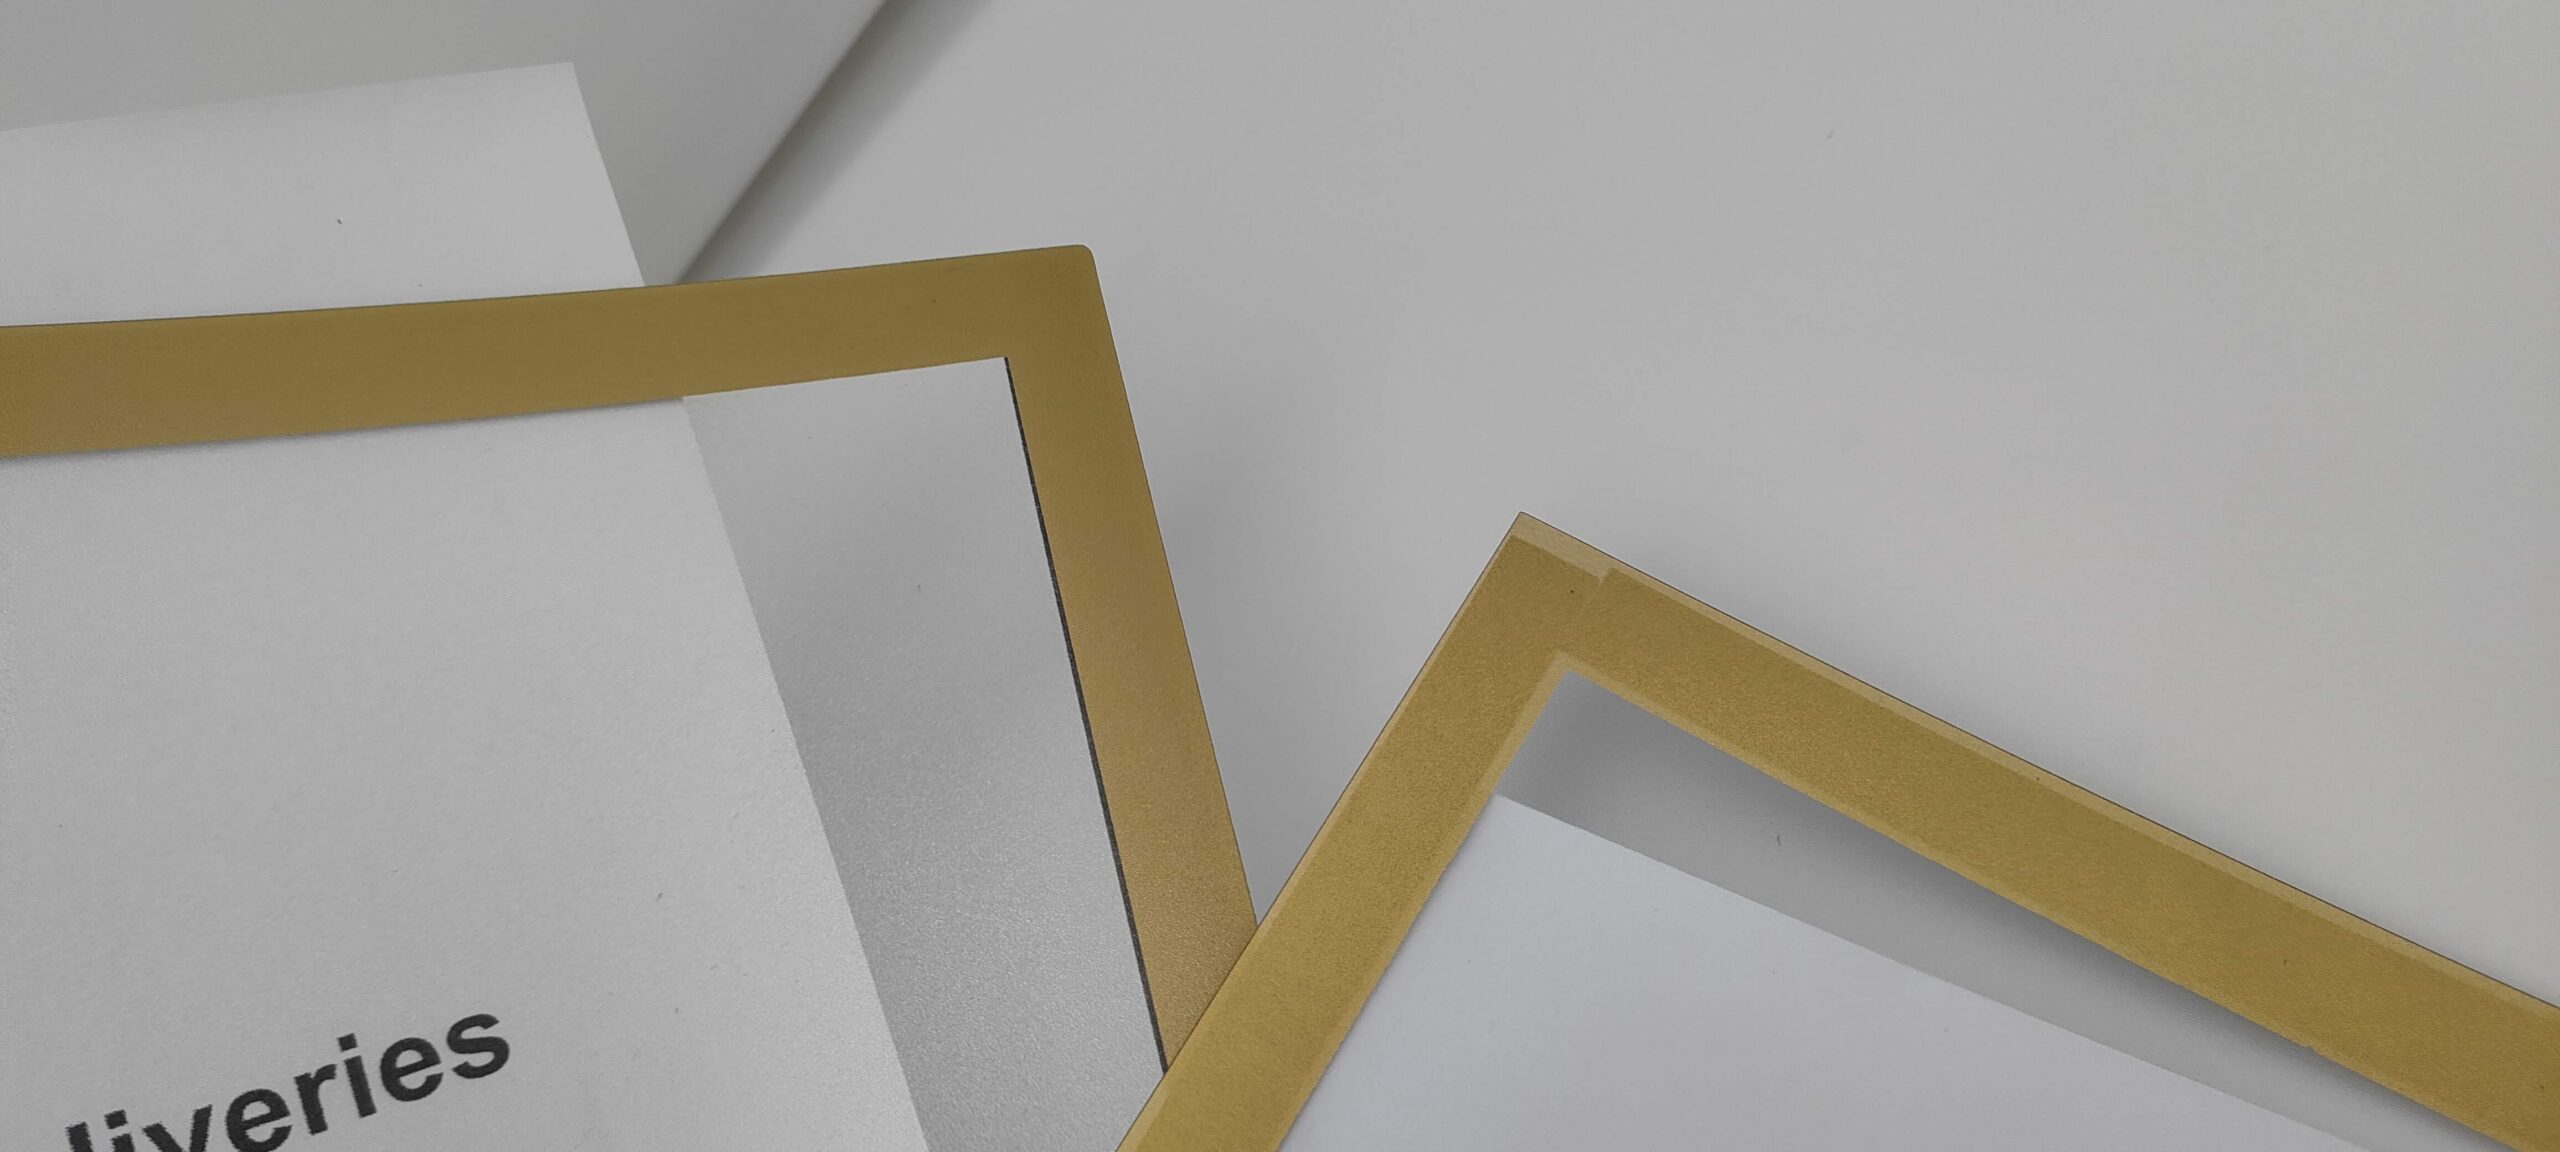 ordered frames - SILVER delivered GOLD, translucent paint